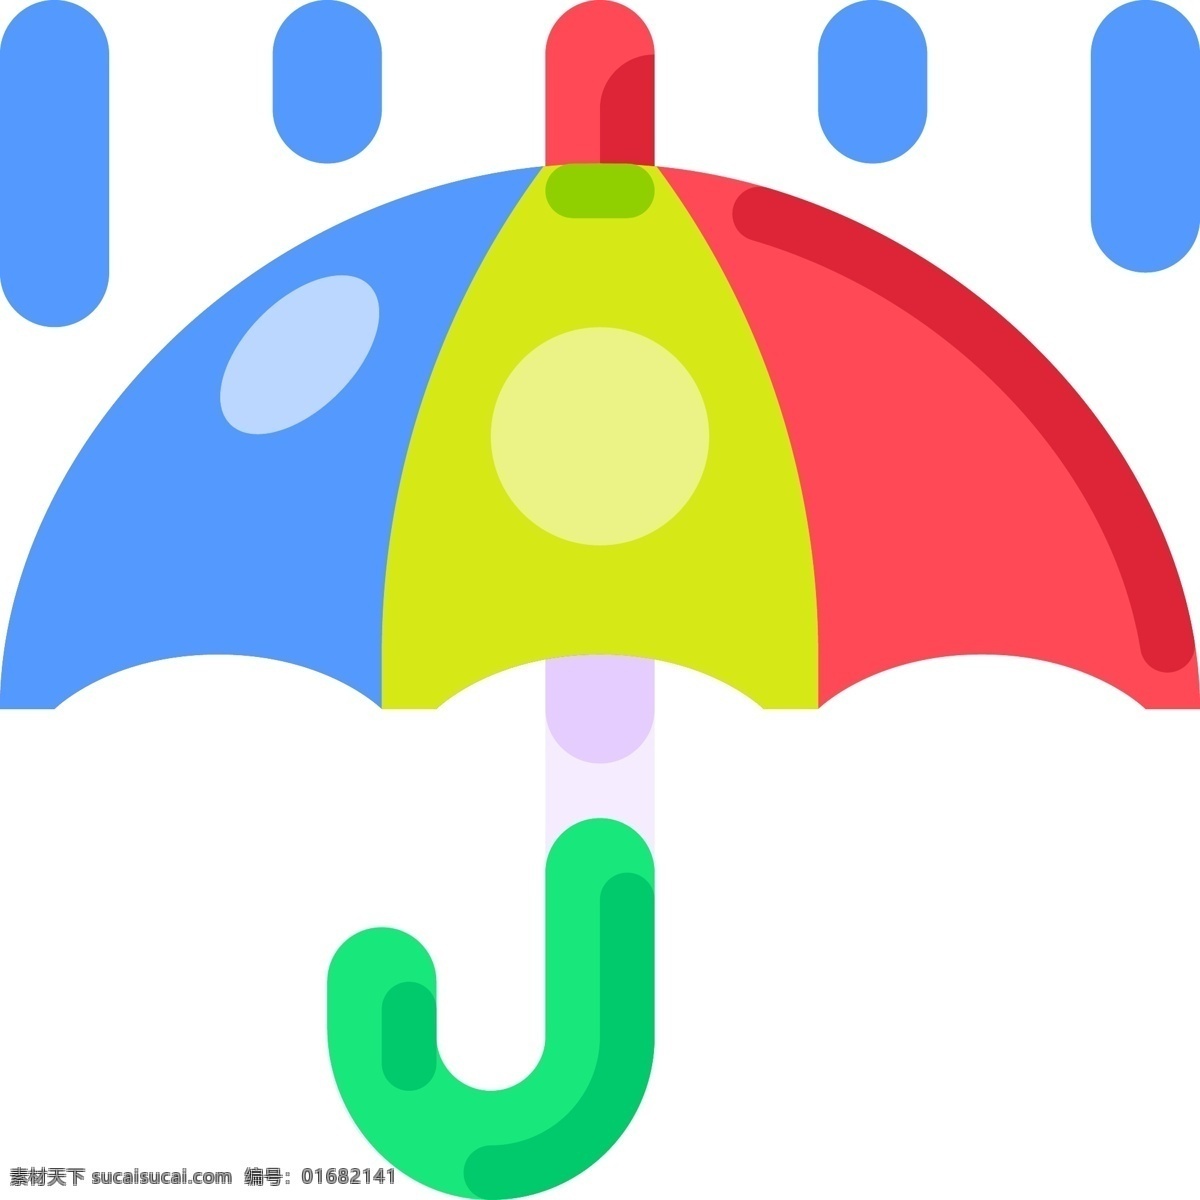 创意 立体 彩色 雨伞 创意图案 立体图案 彩色风格 多彩颜色 拟物图标 插图插画 矢量图标 趣味可爱